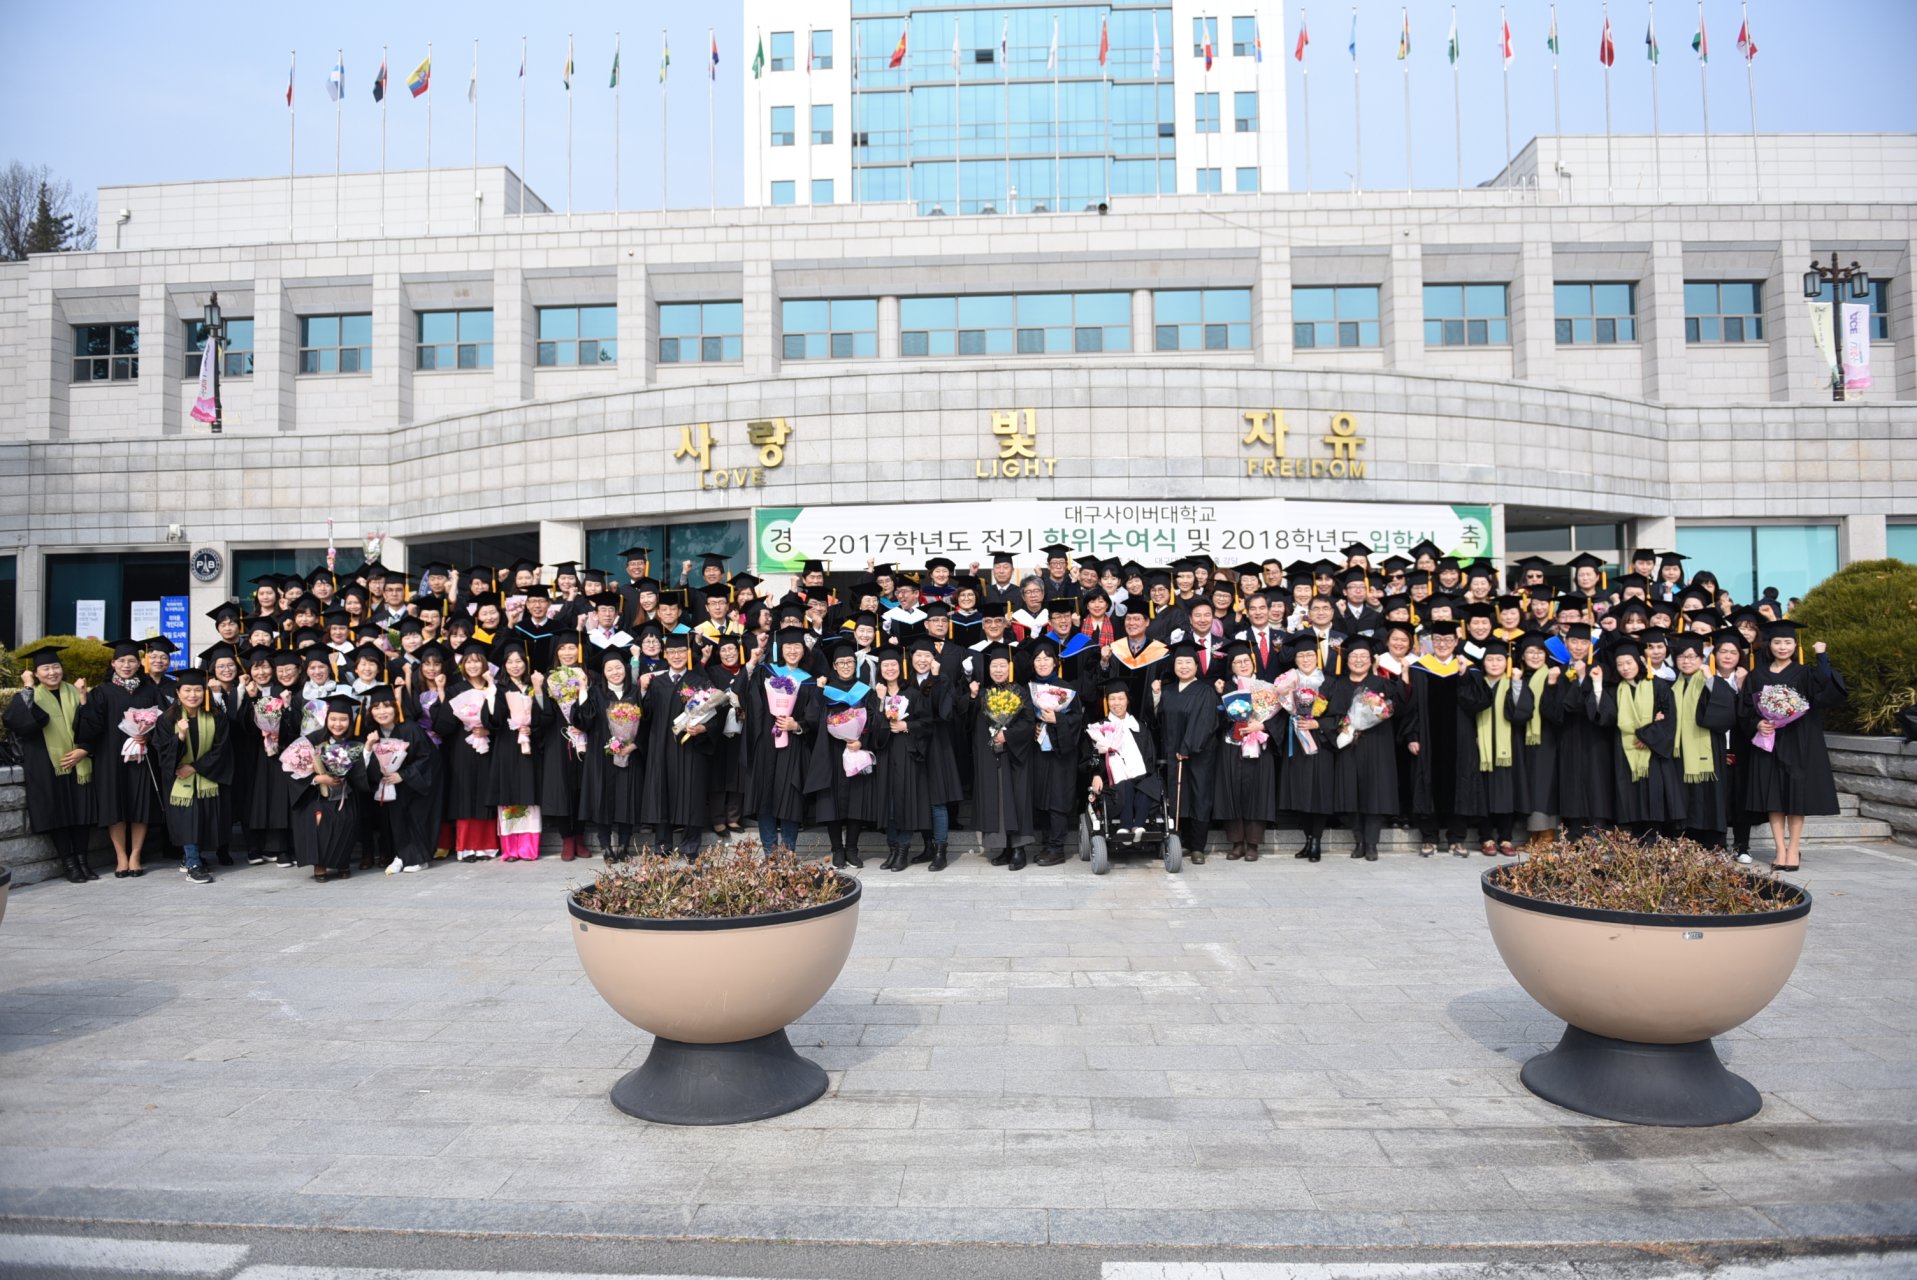 10.졸업식 단체 사진 장면